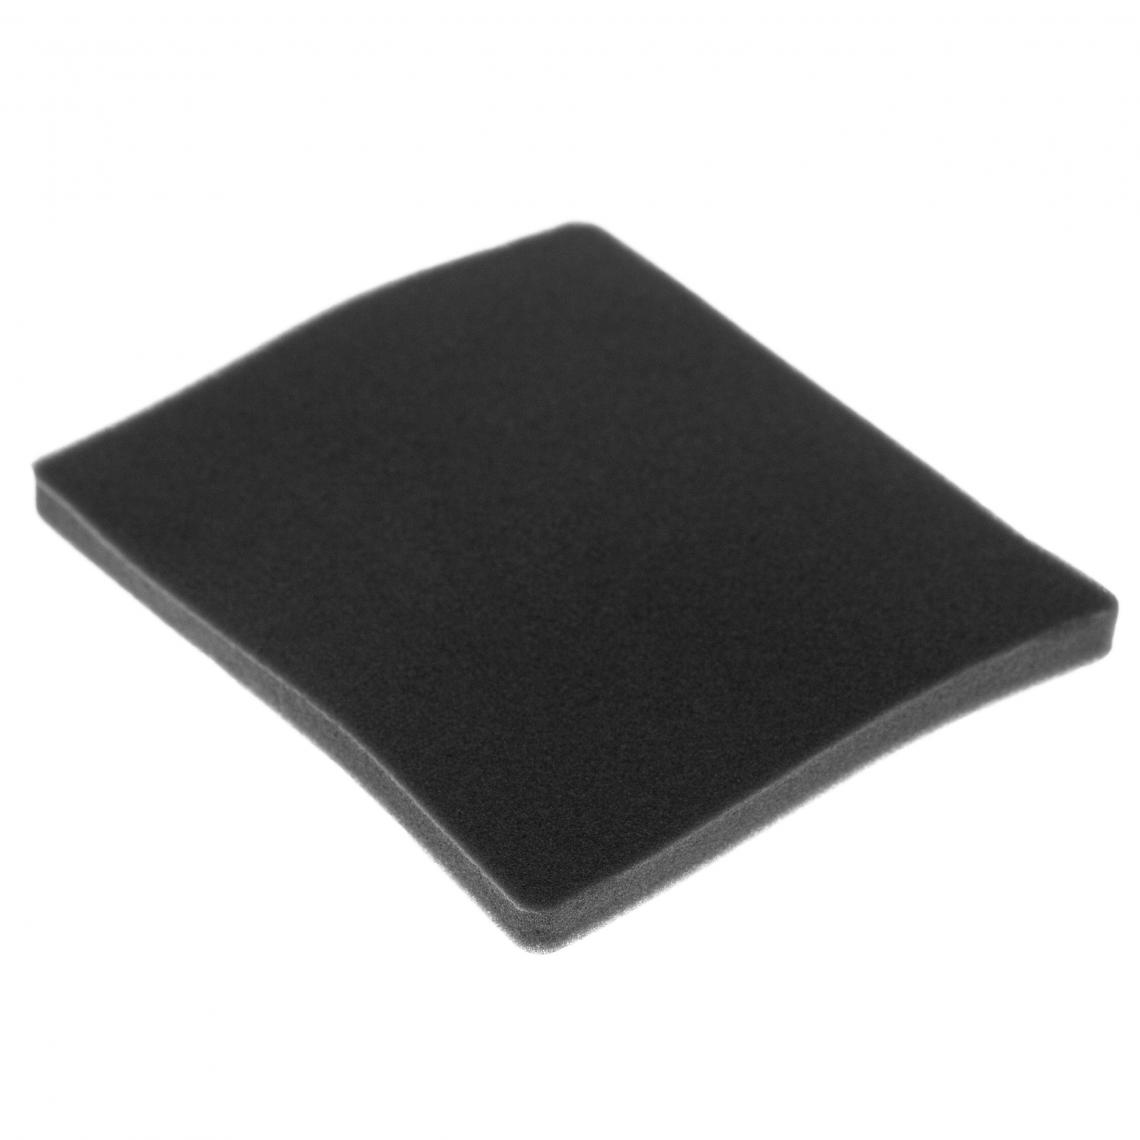 Vhbw - vhbw Filtre compatible avec Electrolux ZCX6460 (910288782) aspirateur - filtre de sortie d'air (filtre éponge), noir - Accessoire entretien des sols